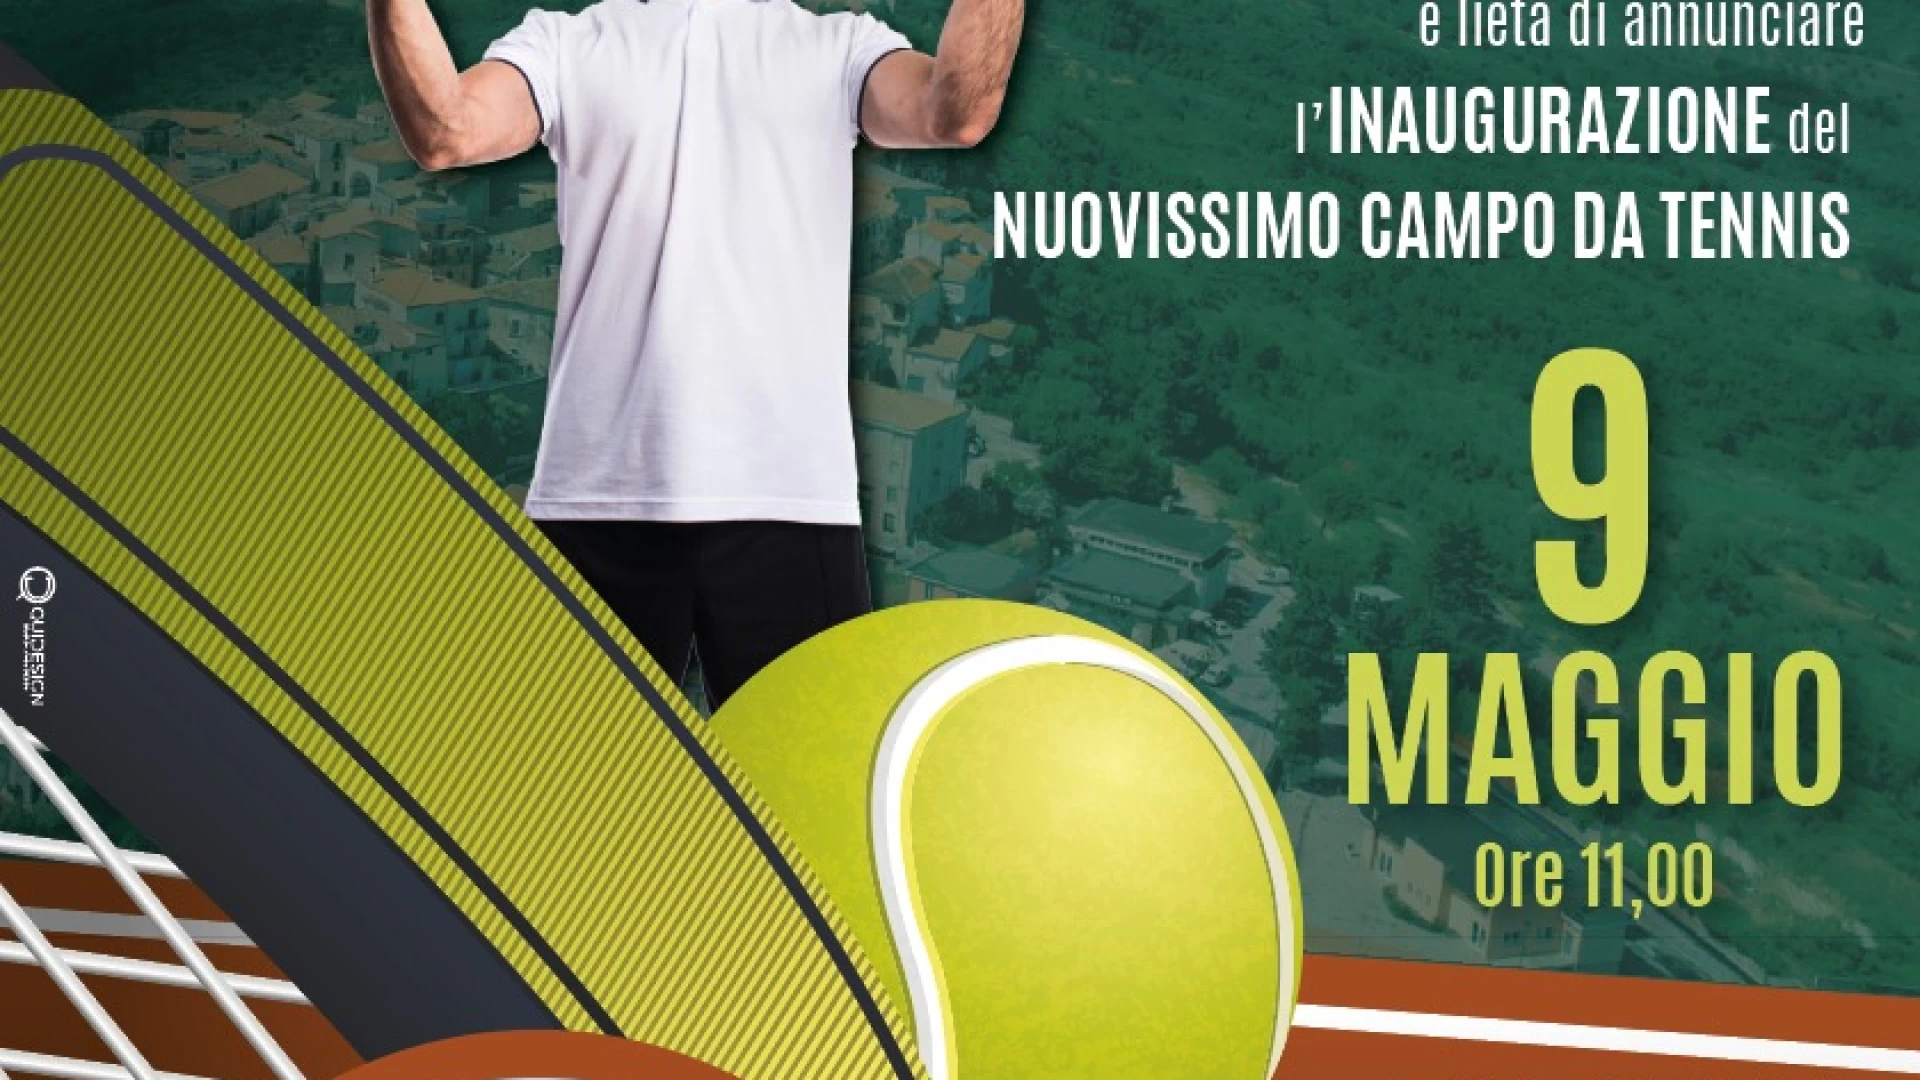 Fornelli: giovedì 11 maggio si inaugura il nuovo campo da tennis che amplia le strutture sportive del comune.